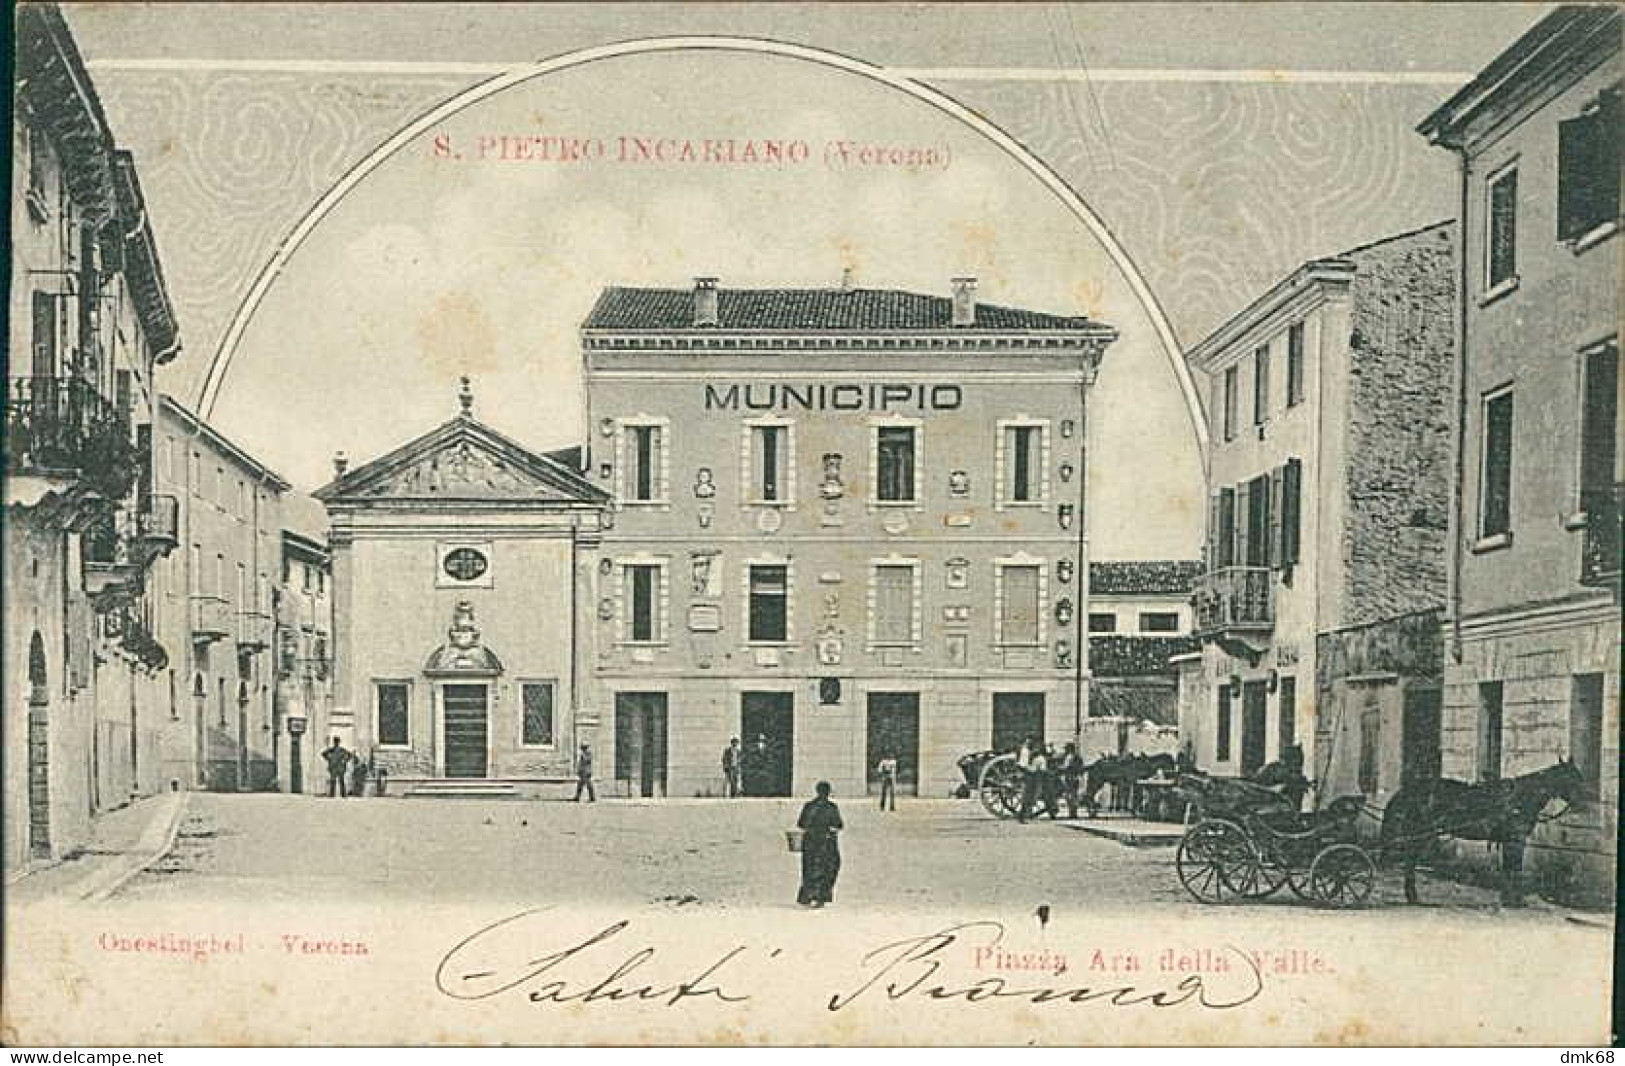 SAN PIETRO IN CARIANO ( VERONA ) PIAZZA ARA DELLLA VALLE - EDIZIONE ONESTIGHEL - SPEDITA - 1900s  (20508) - Verona